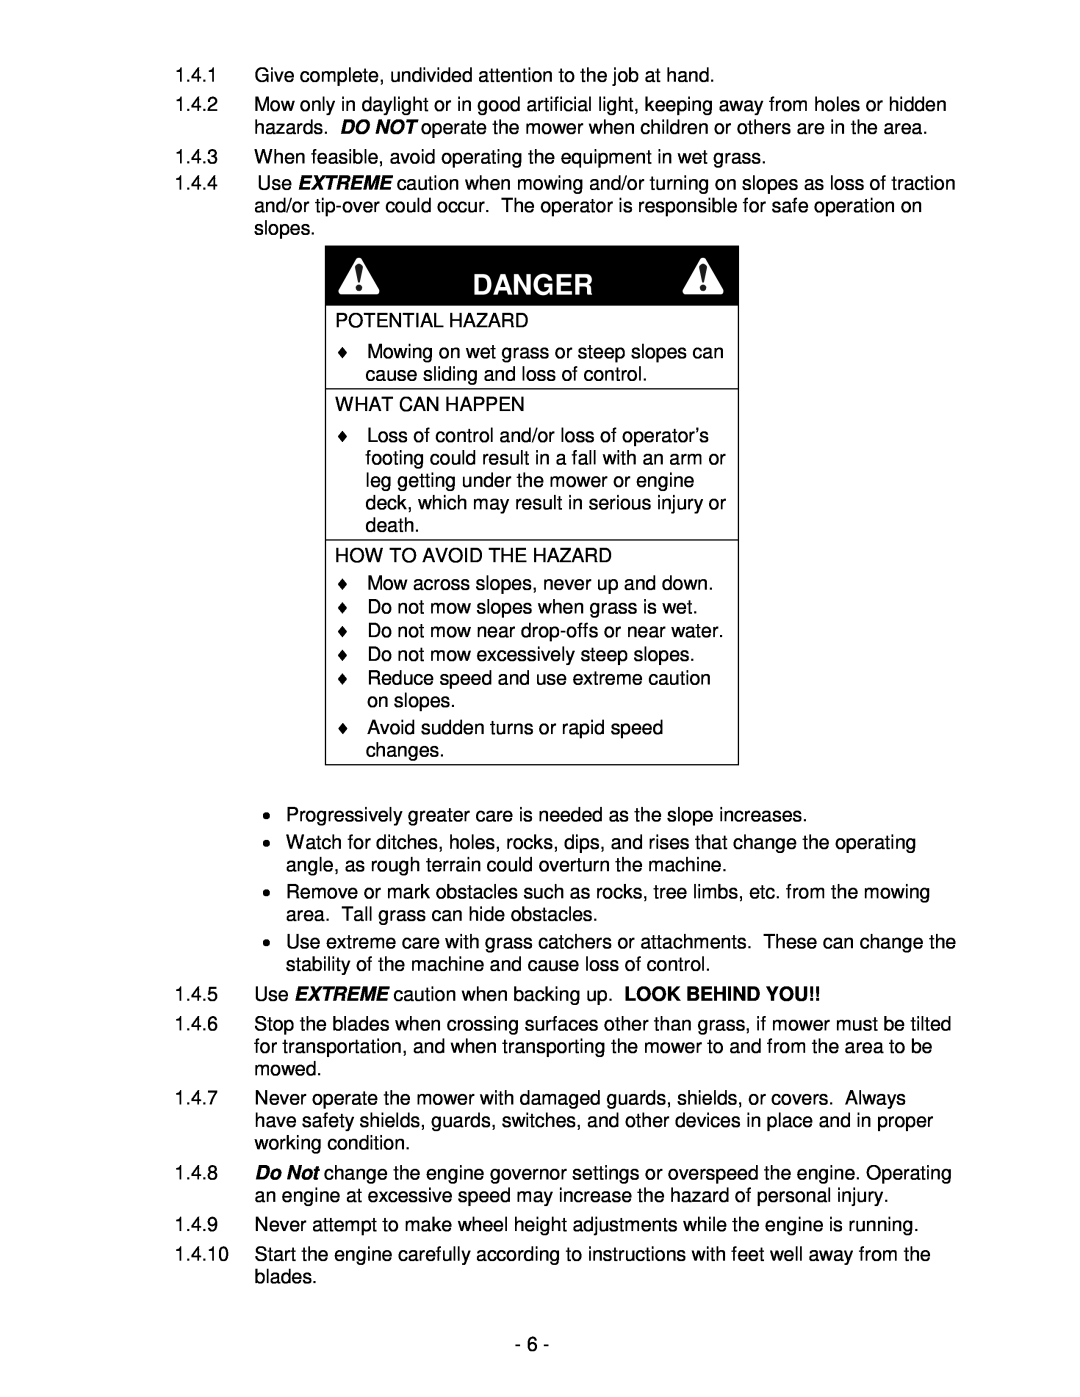 Honda Power Equipment metro 21 manual Danger 